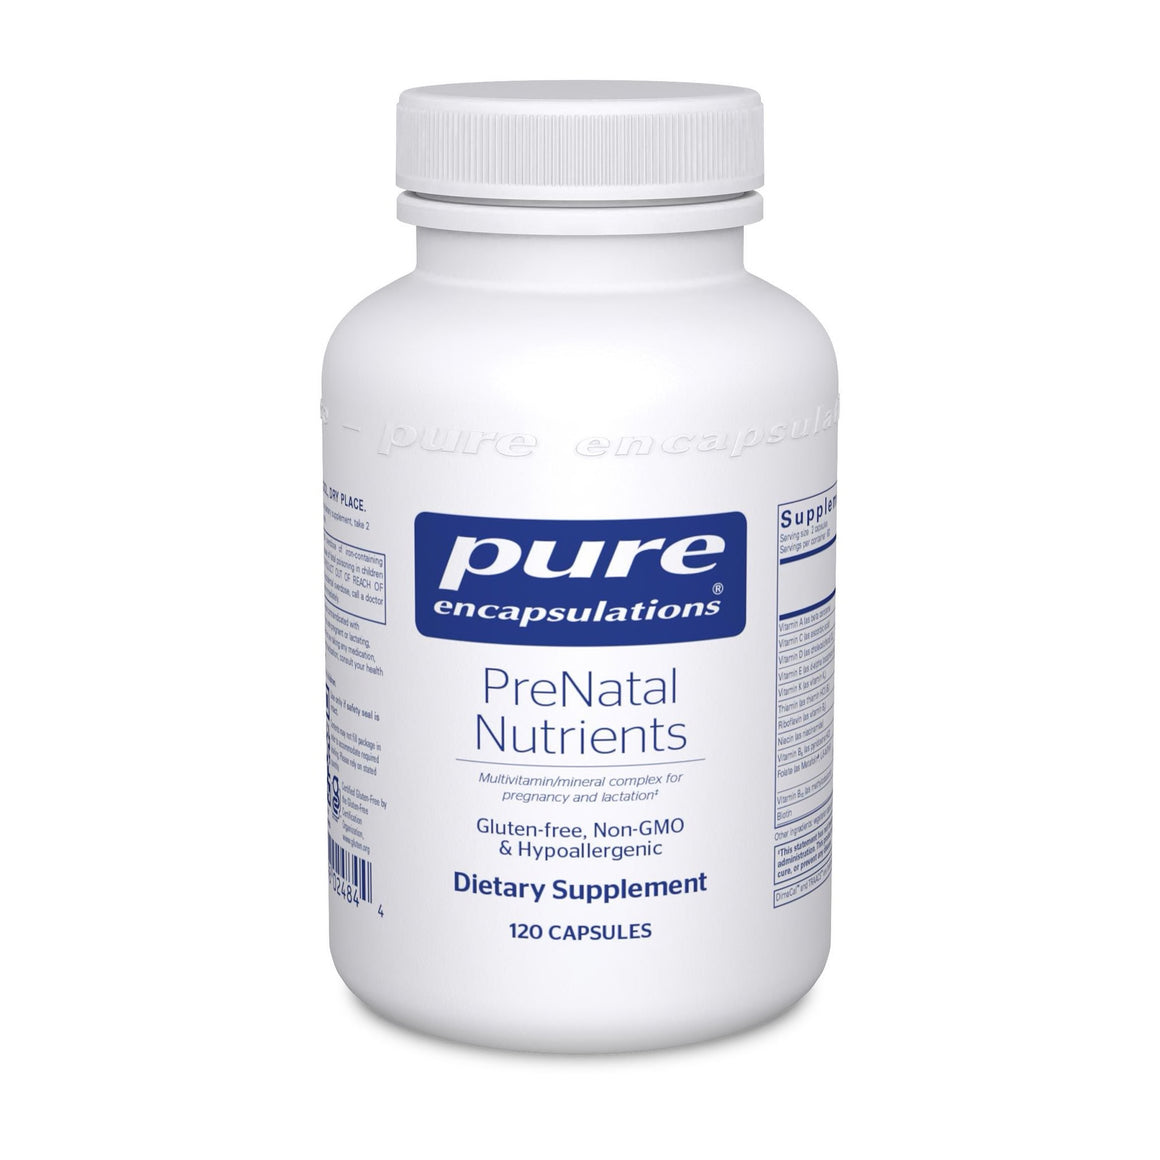 Prenatal Nutrients - Pure Encapsulations - 120 capsules